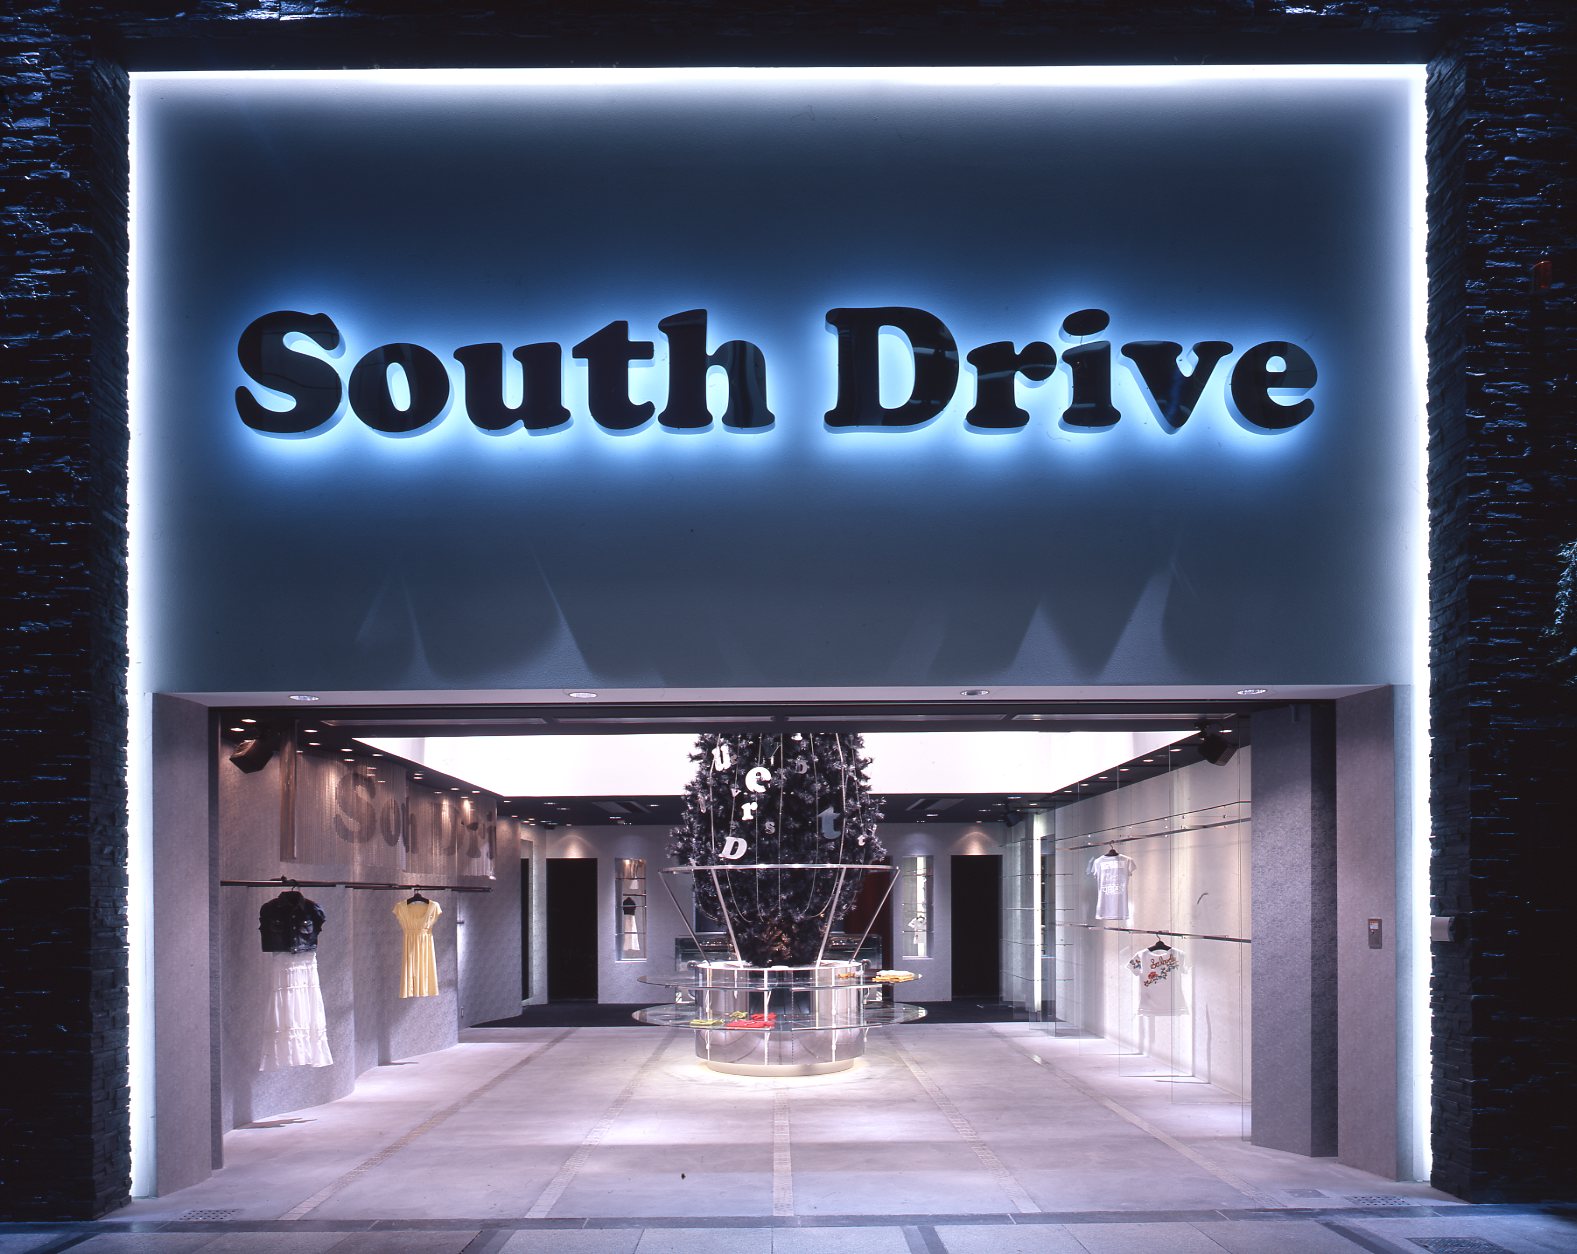 South Drive / South Drive